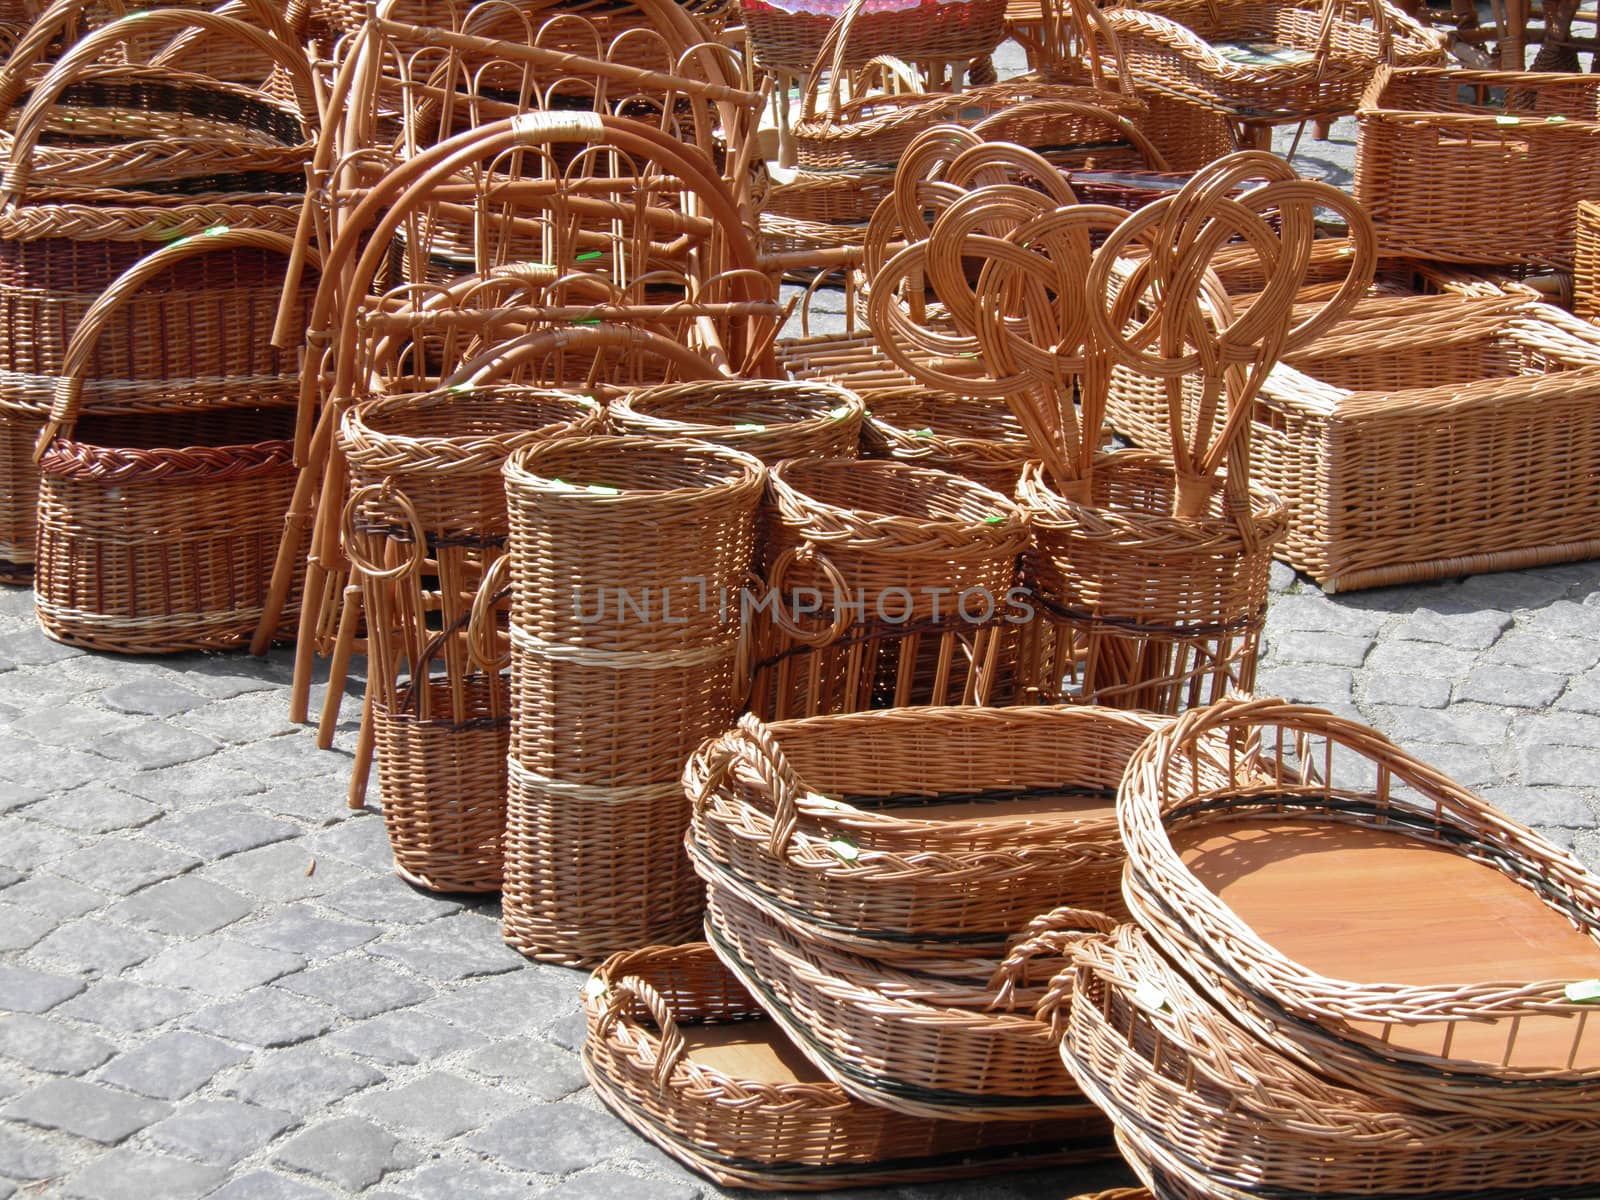 wicker baskets by paolo77